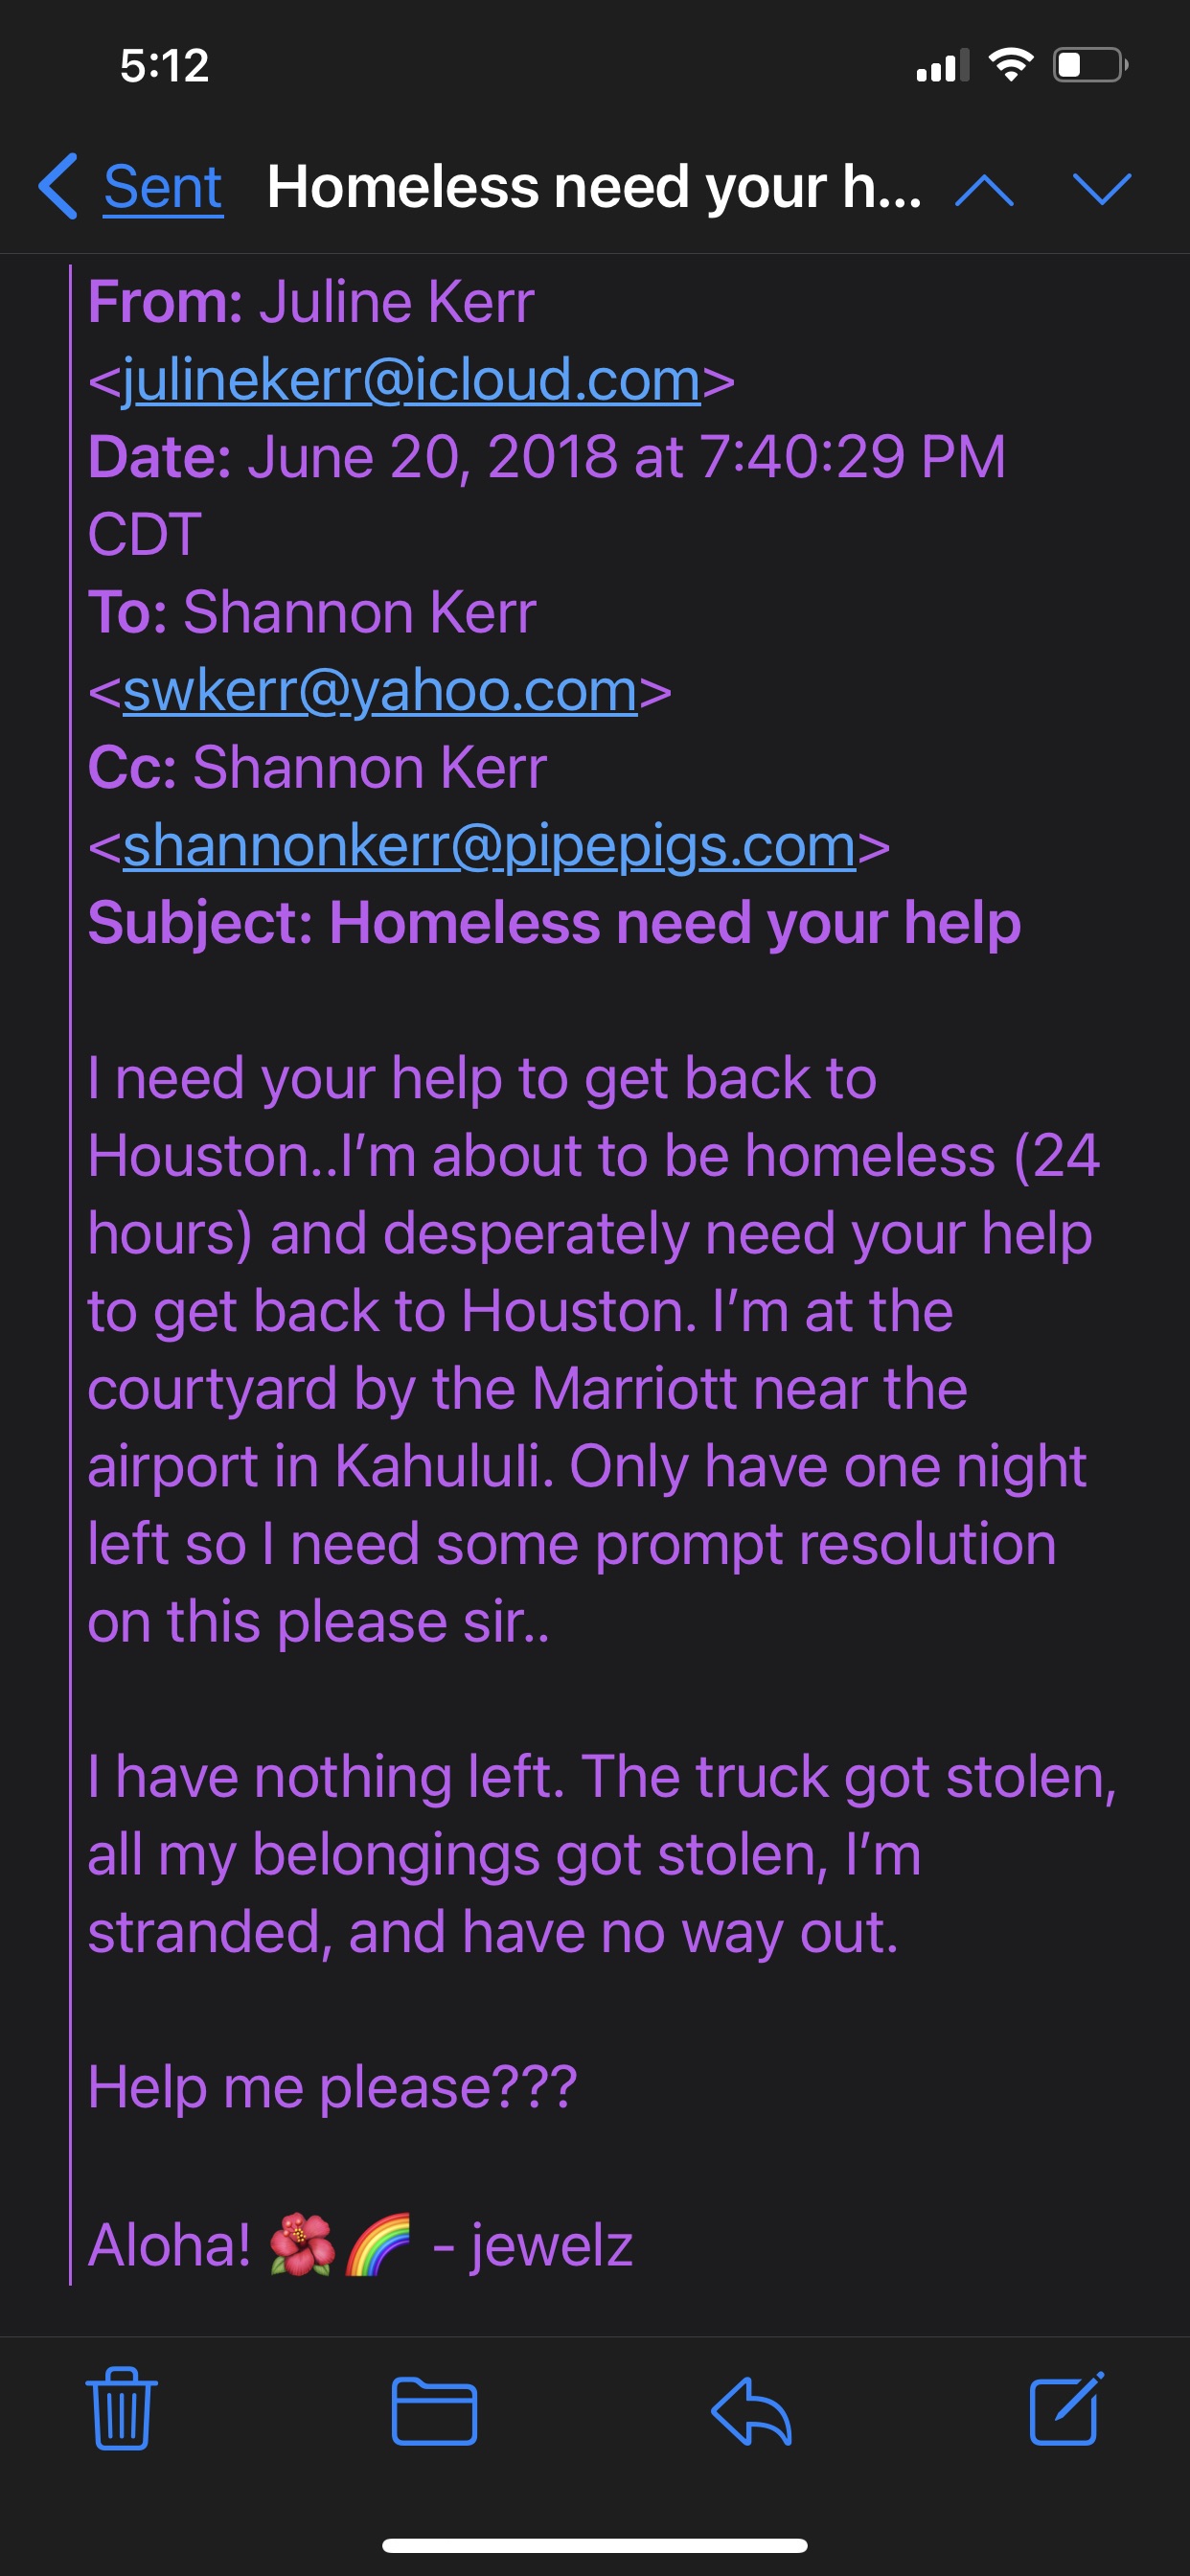 June 20 2018 email to Shannon regarding homelessn